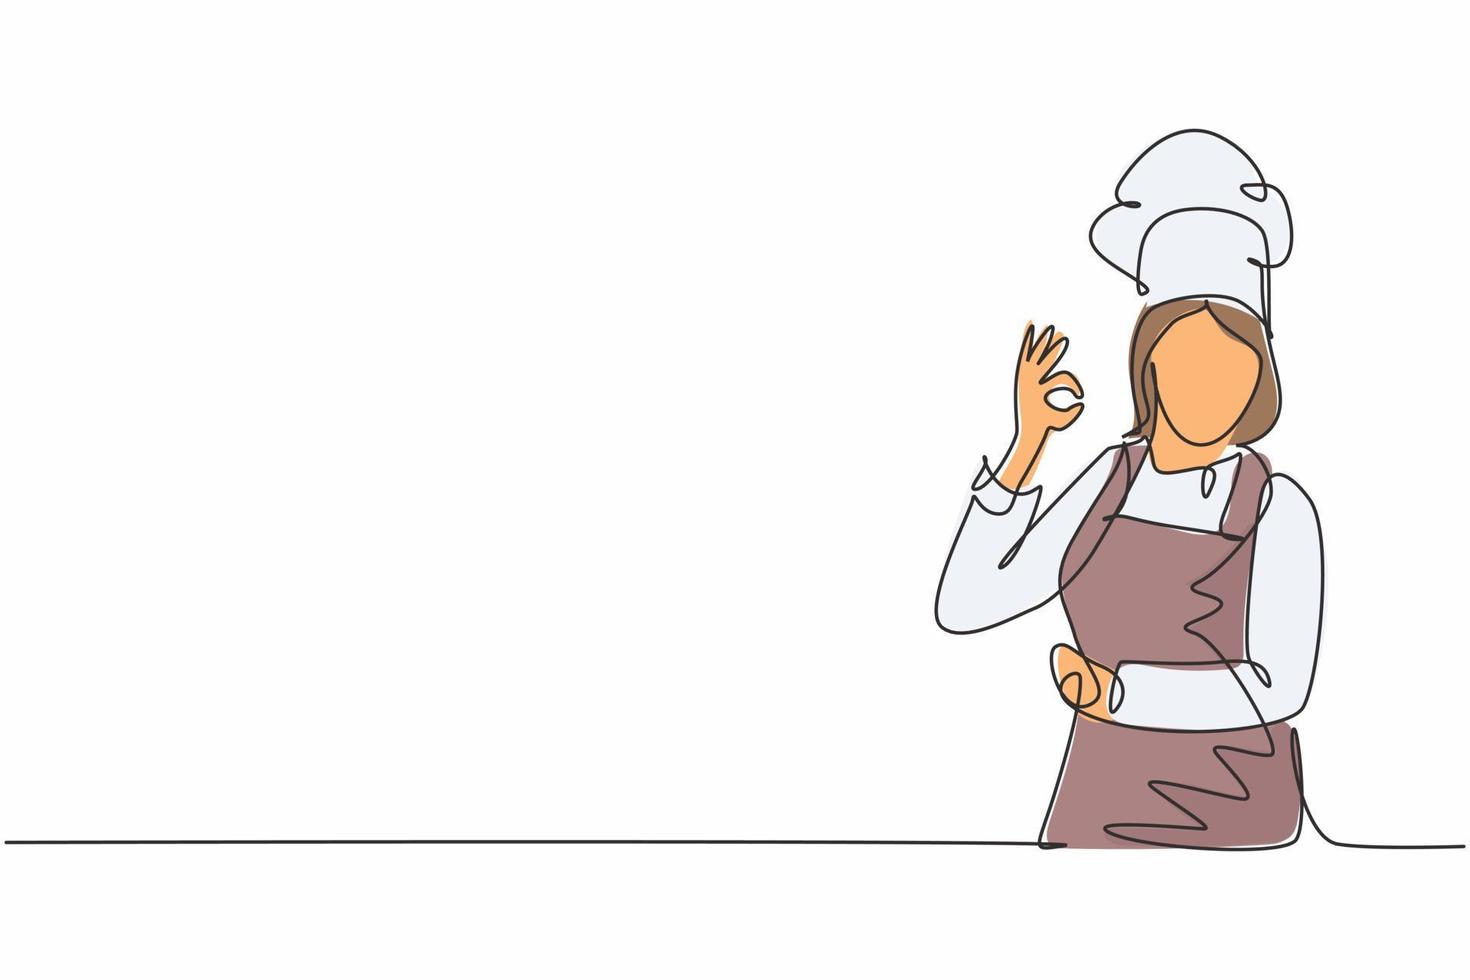 een doorlopende lijntekening van een jonge vrouwelijke chef-kok poseert nonchalant terwijl hij een uitstekend gebaar van de smaak van eten geeft. restaurant banner concept enkele lijn tekenen ontwerp vectorillustratie met witte achtergrond vector